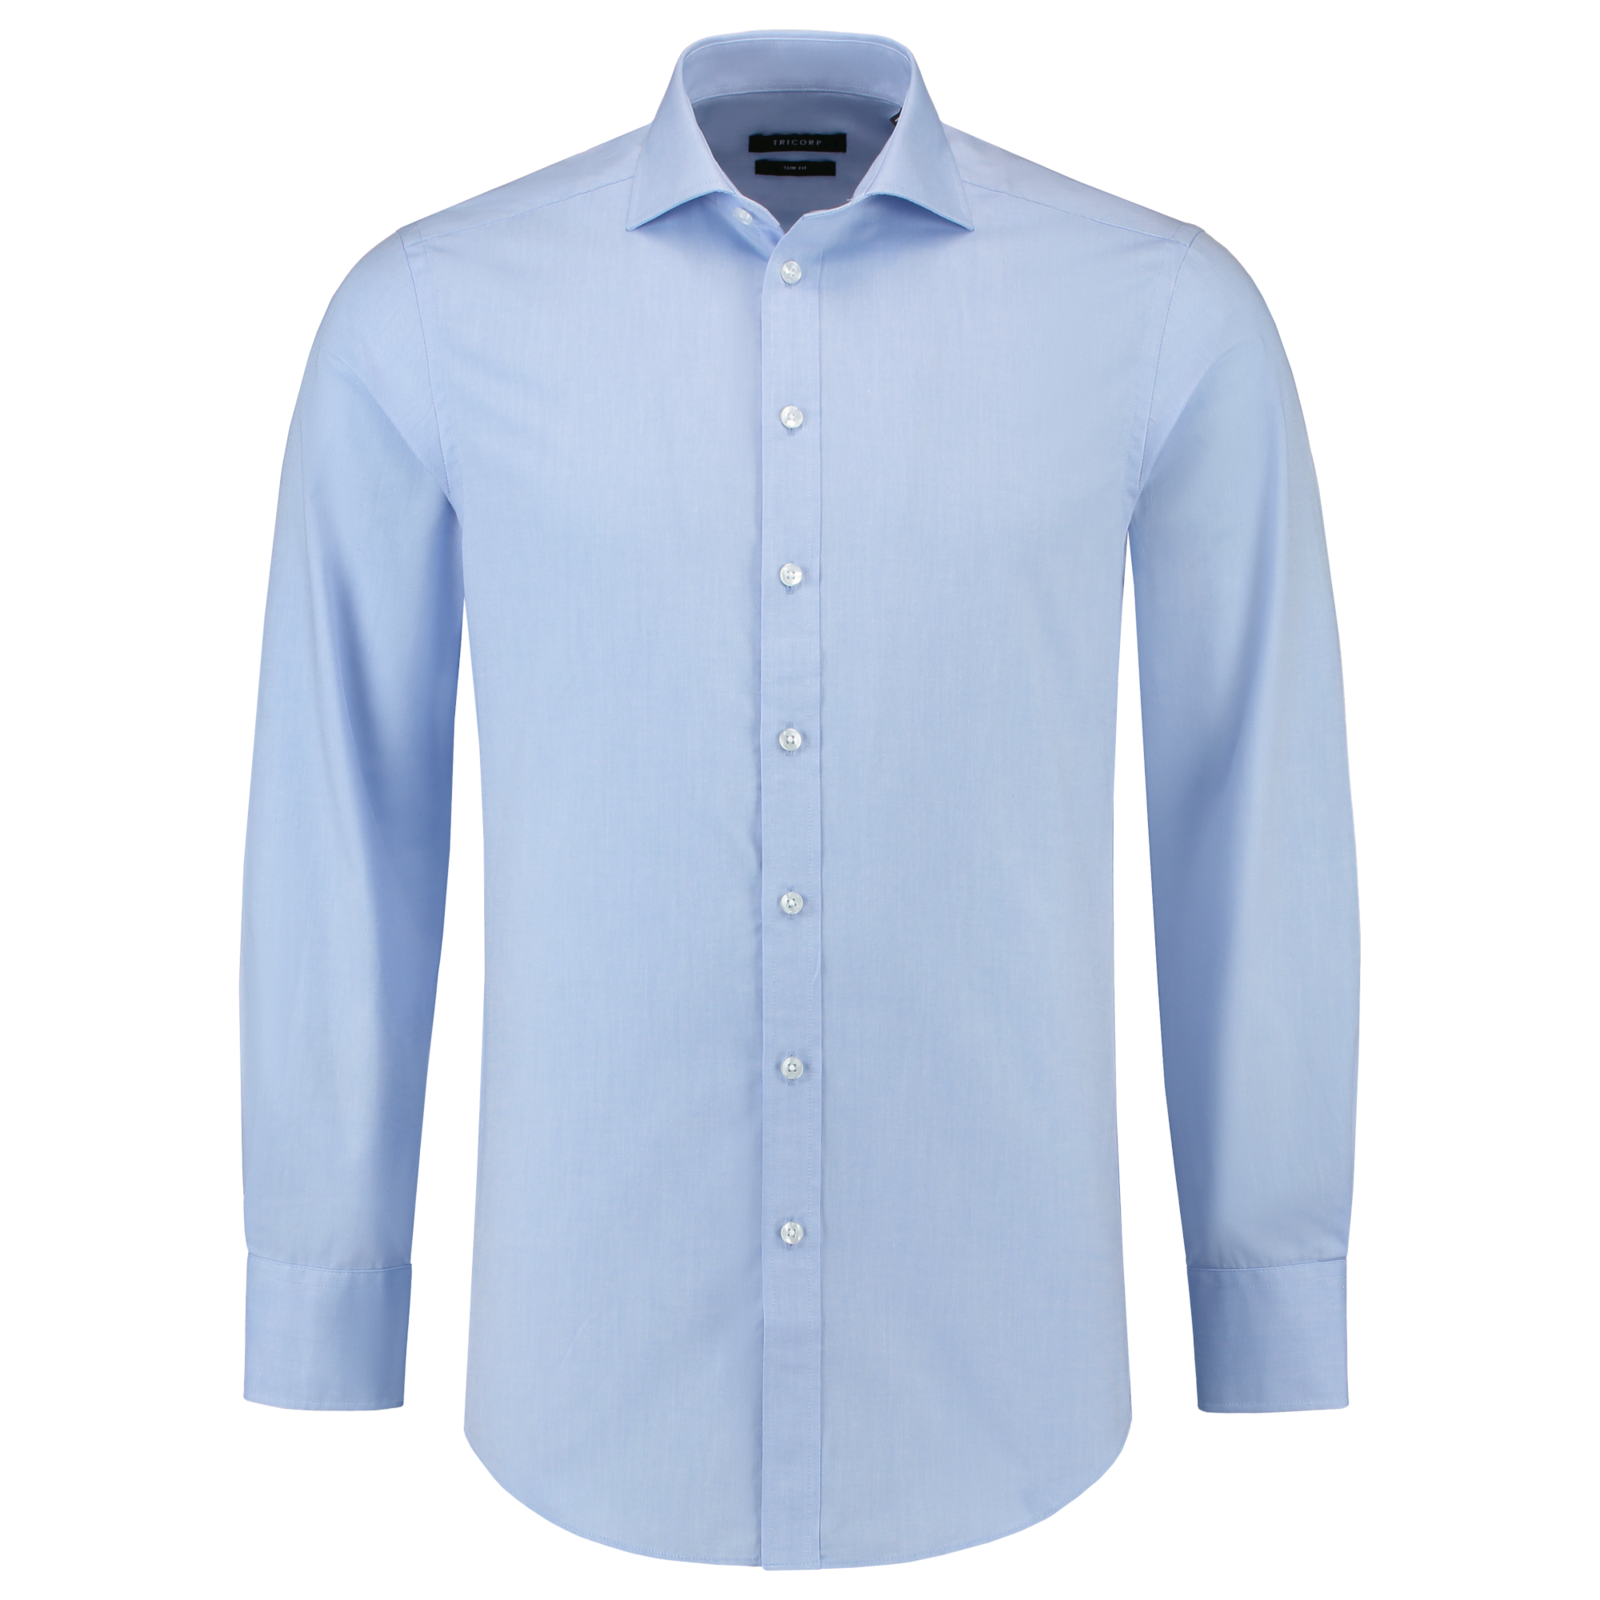 Pánska košeľa s dlhým rukávom Tricorp Fitted T21 - veľkosť: 38, farba: svetlo modrá